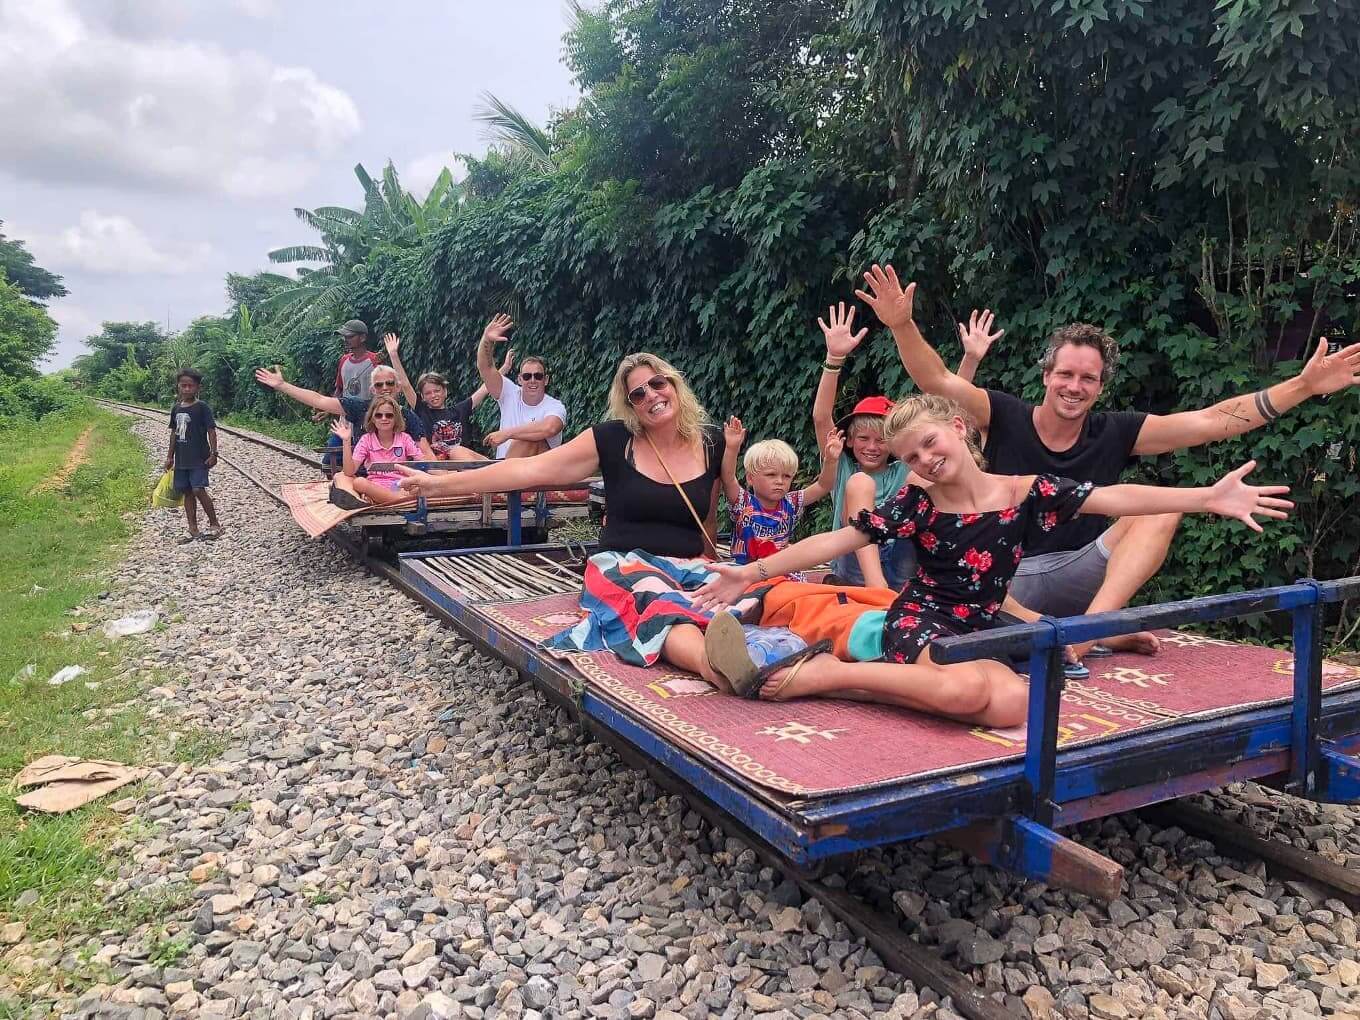 Best-of-Cambodia-8-Days-battambang-bamboo-train-2.jpg